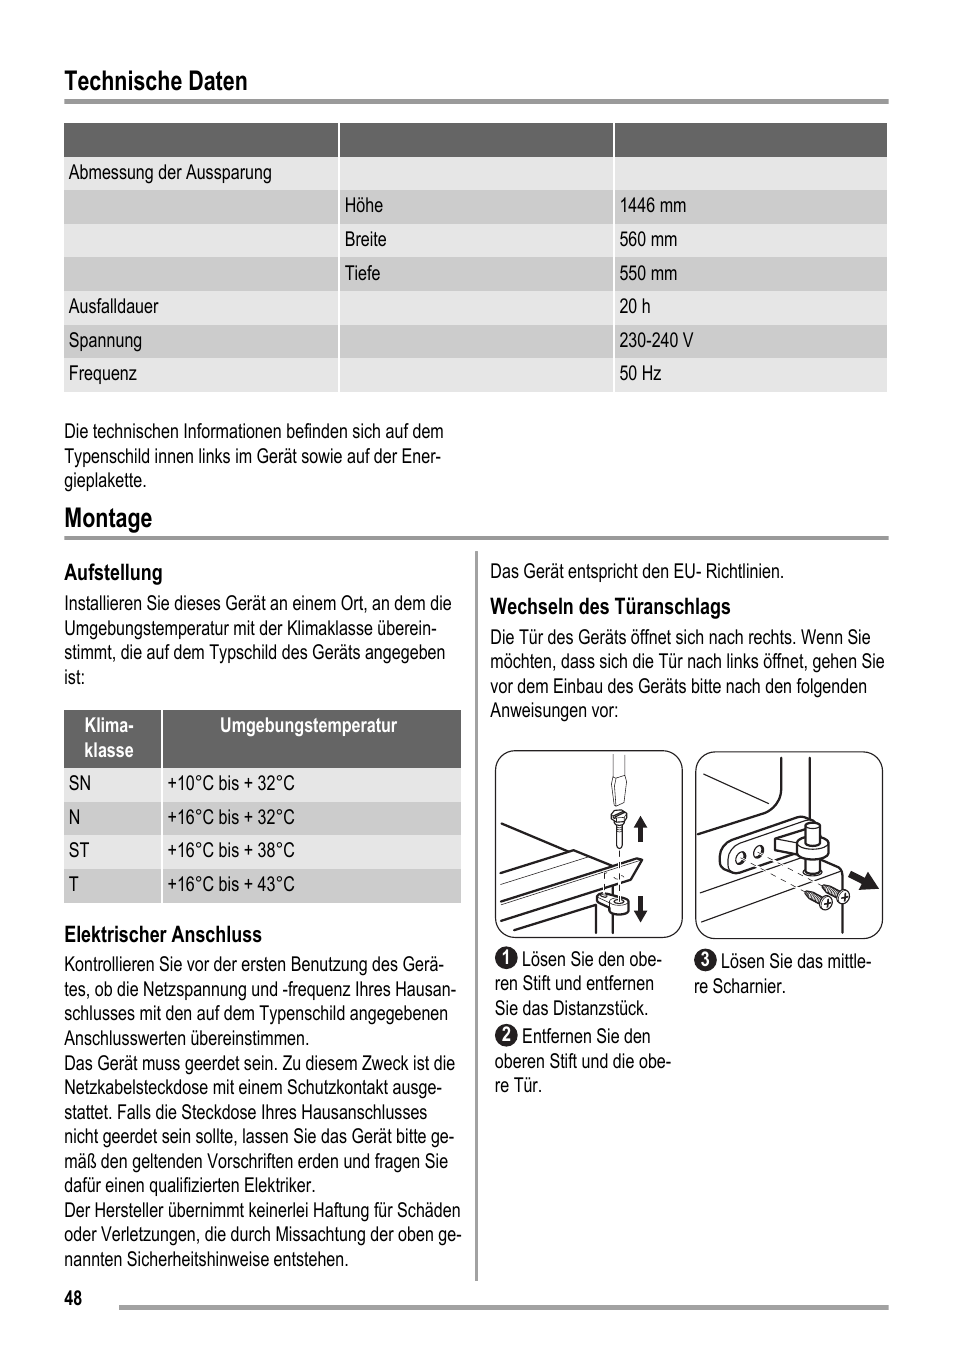 Technische daten, Montage | ZANKER KBT 23001 SB User Manual | Page 48 / 52